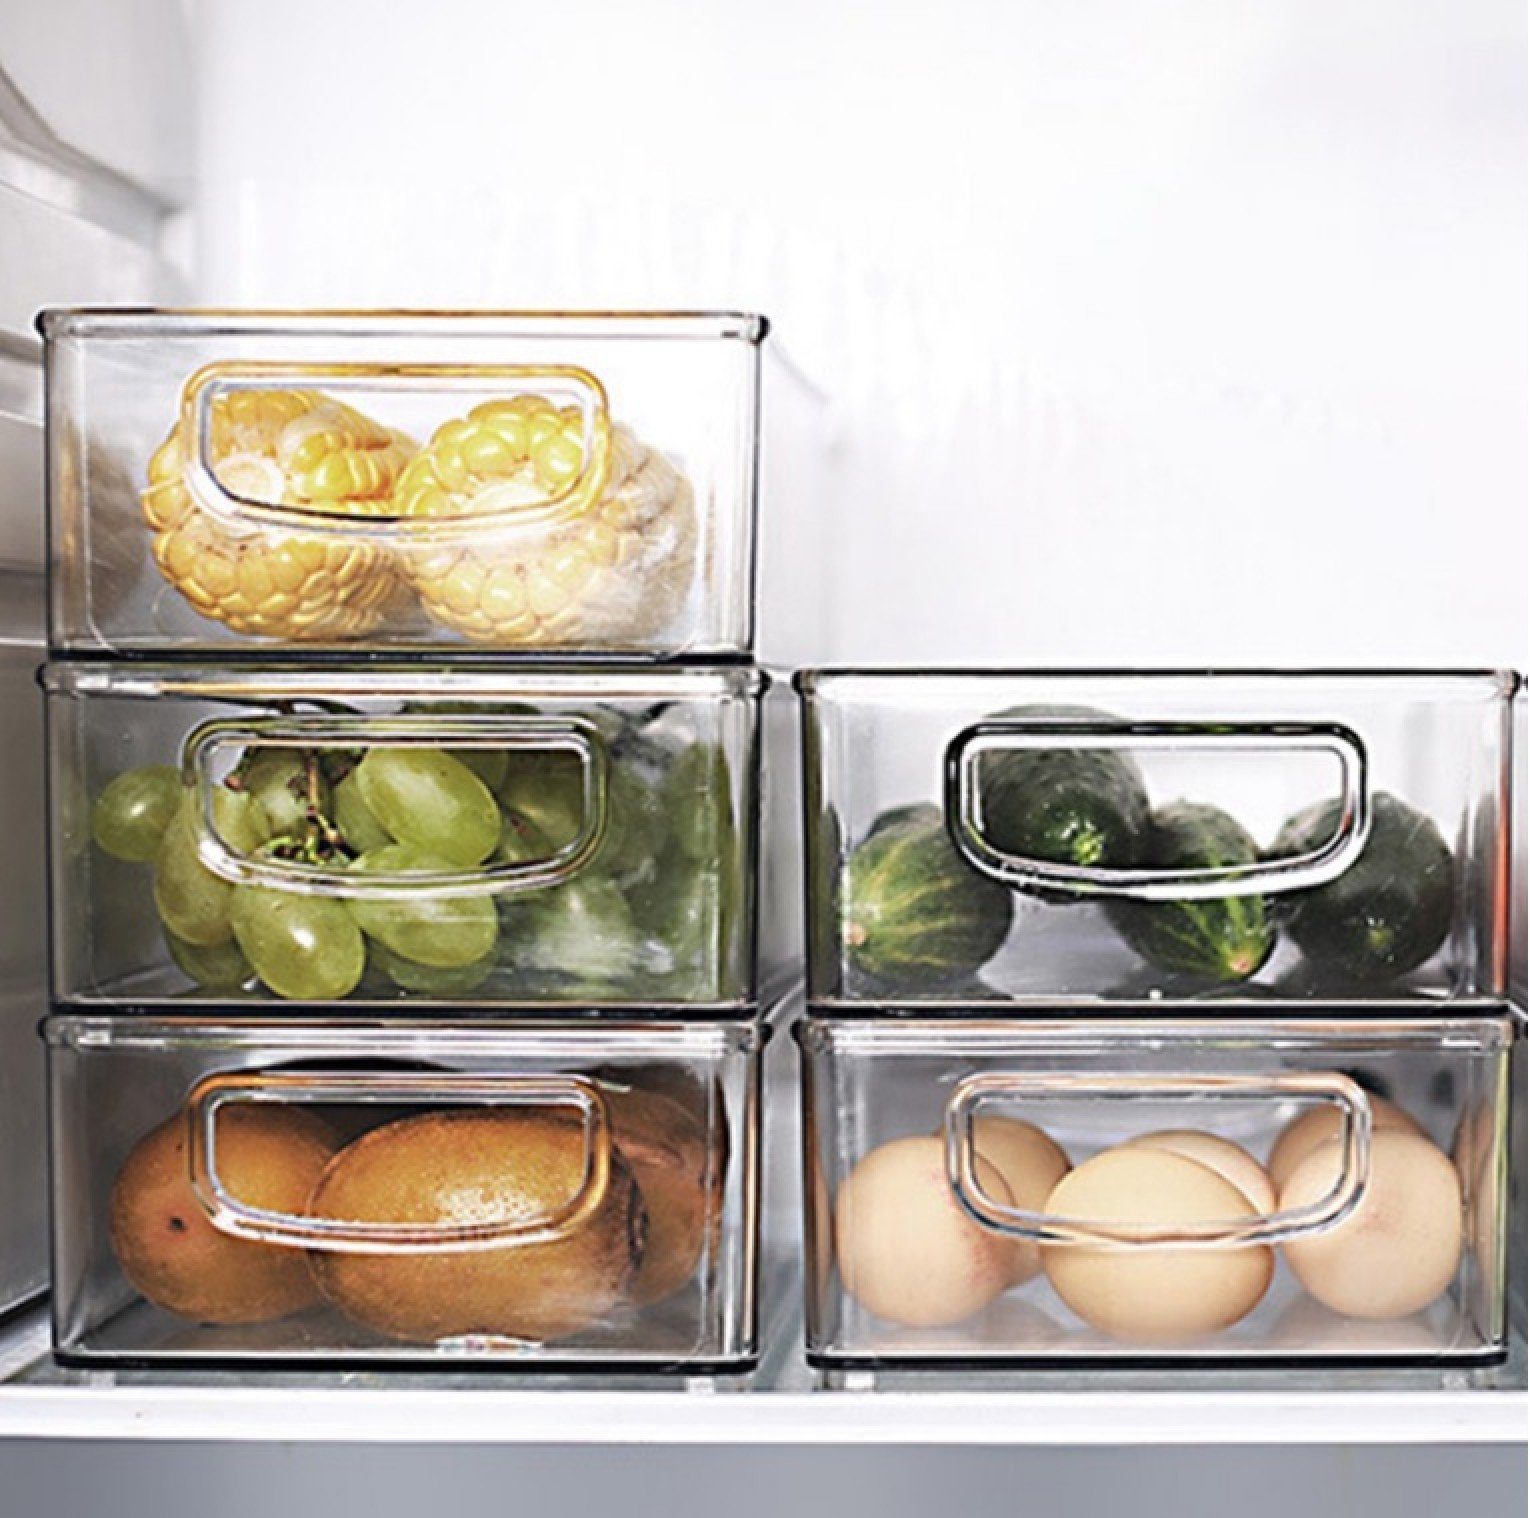 BAYLI Pizzaschneider Kühlschrank Organizer Vorra Küche, Aufbewahrungsbox Stapelbar, die für